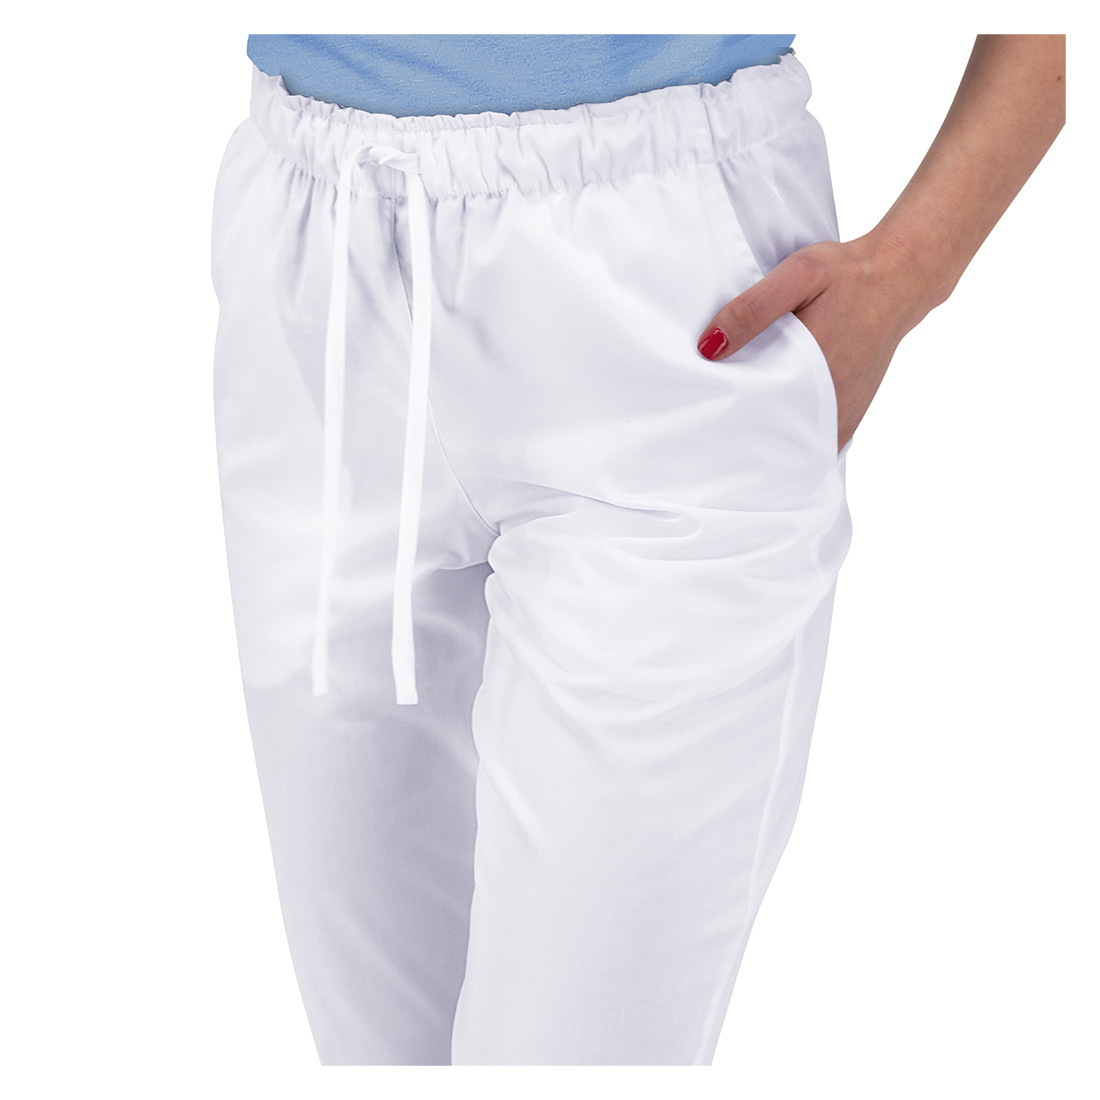 Pantalon Médical Unisexe élastique